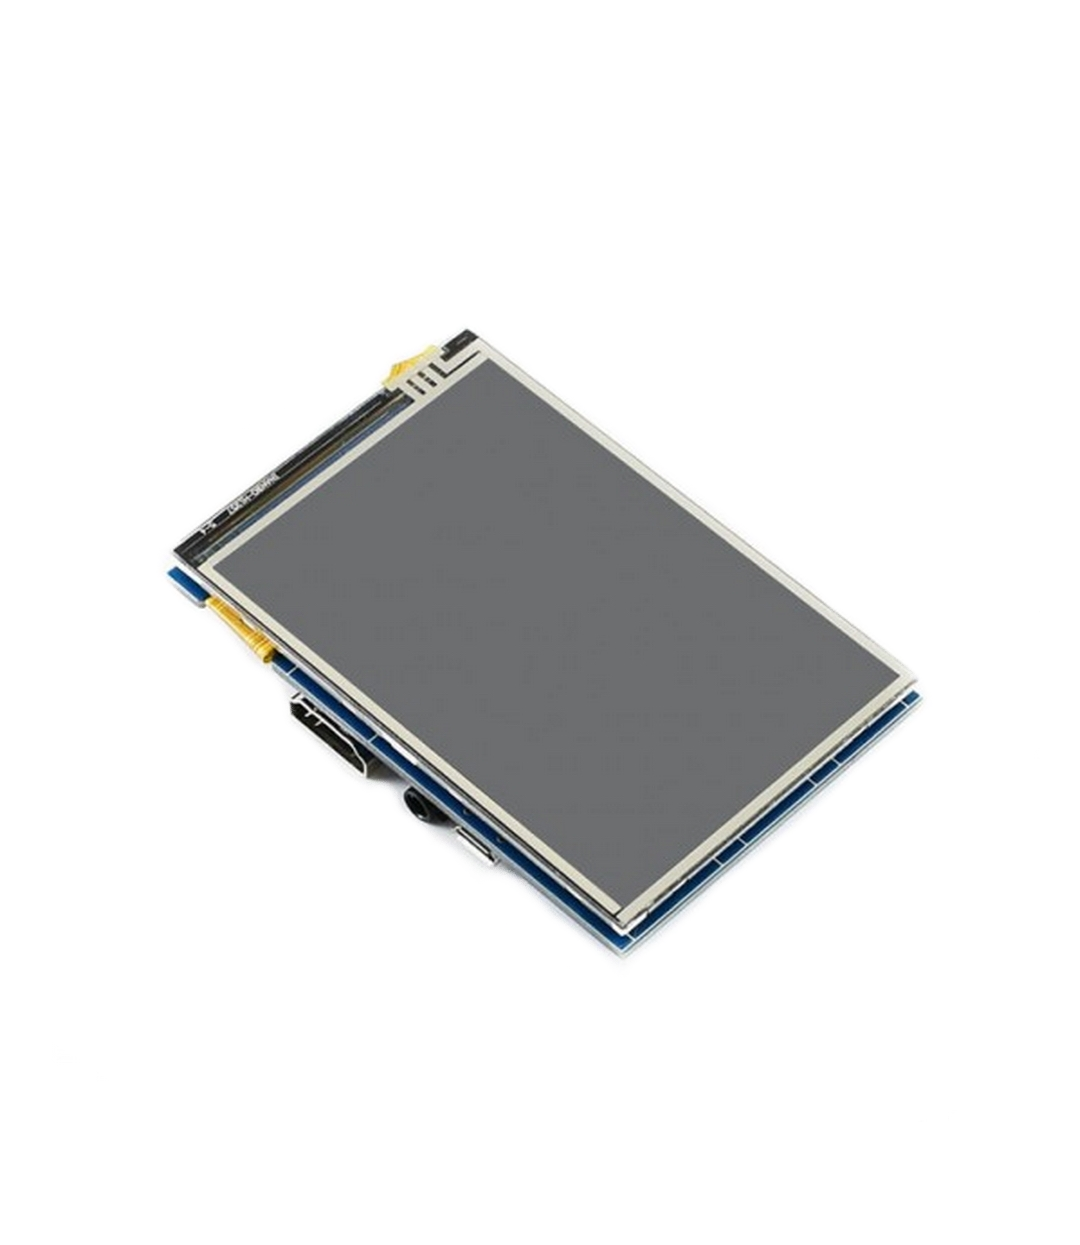 Модуль для дисплеев ACD "ACD18-RA415 Waveshare 3.5" резистивный сенсорный дисплей без корпуса, 480*320 IPS матрица, вход" HDMI, питание по USB,